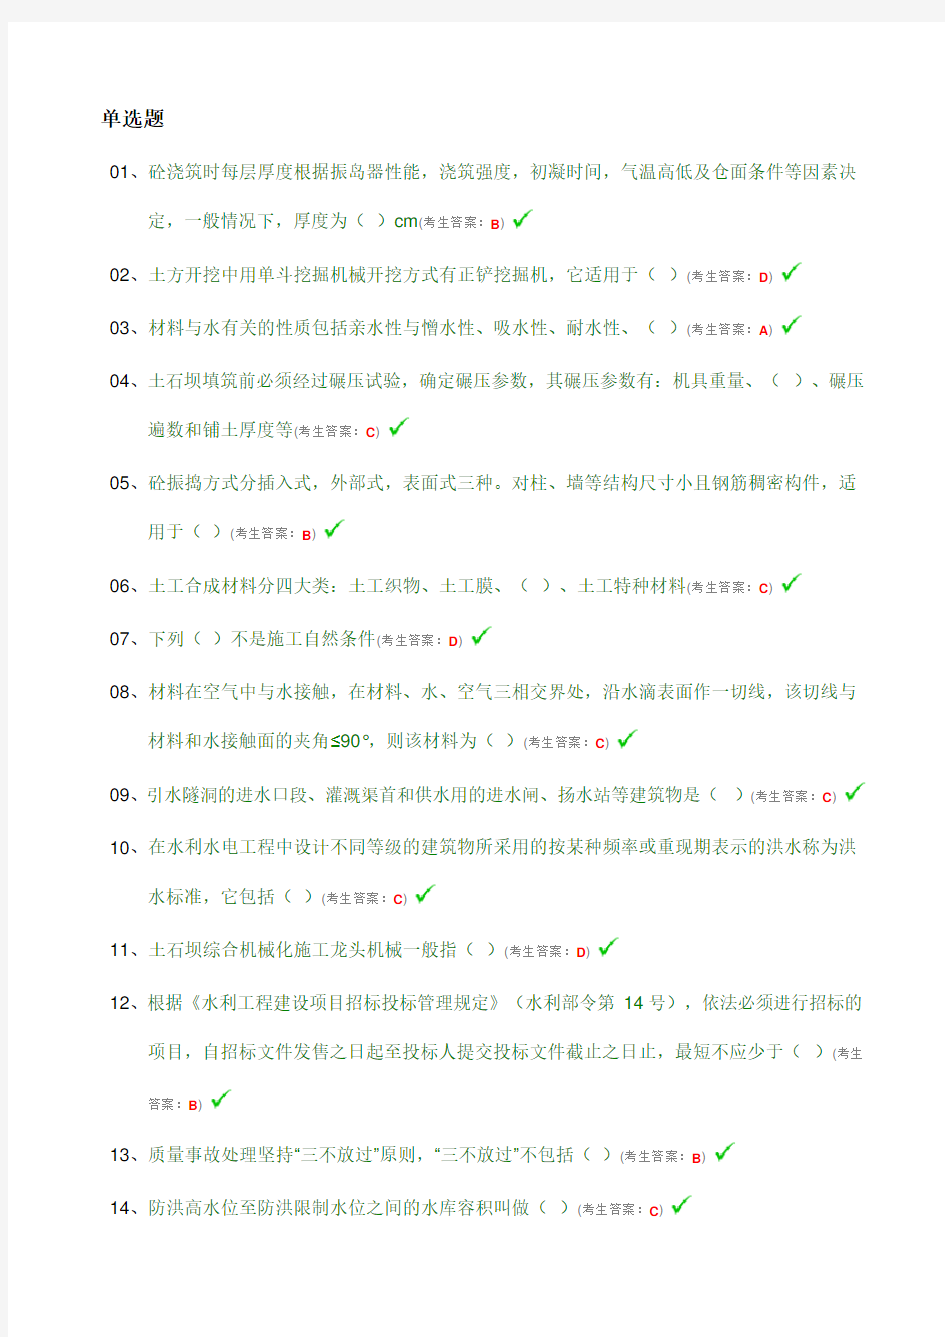 中国水利工程协会五大员质检员安全员施工员材料员资料员考试试题答案汇总